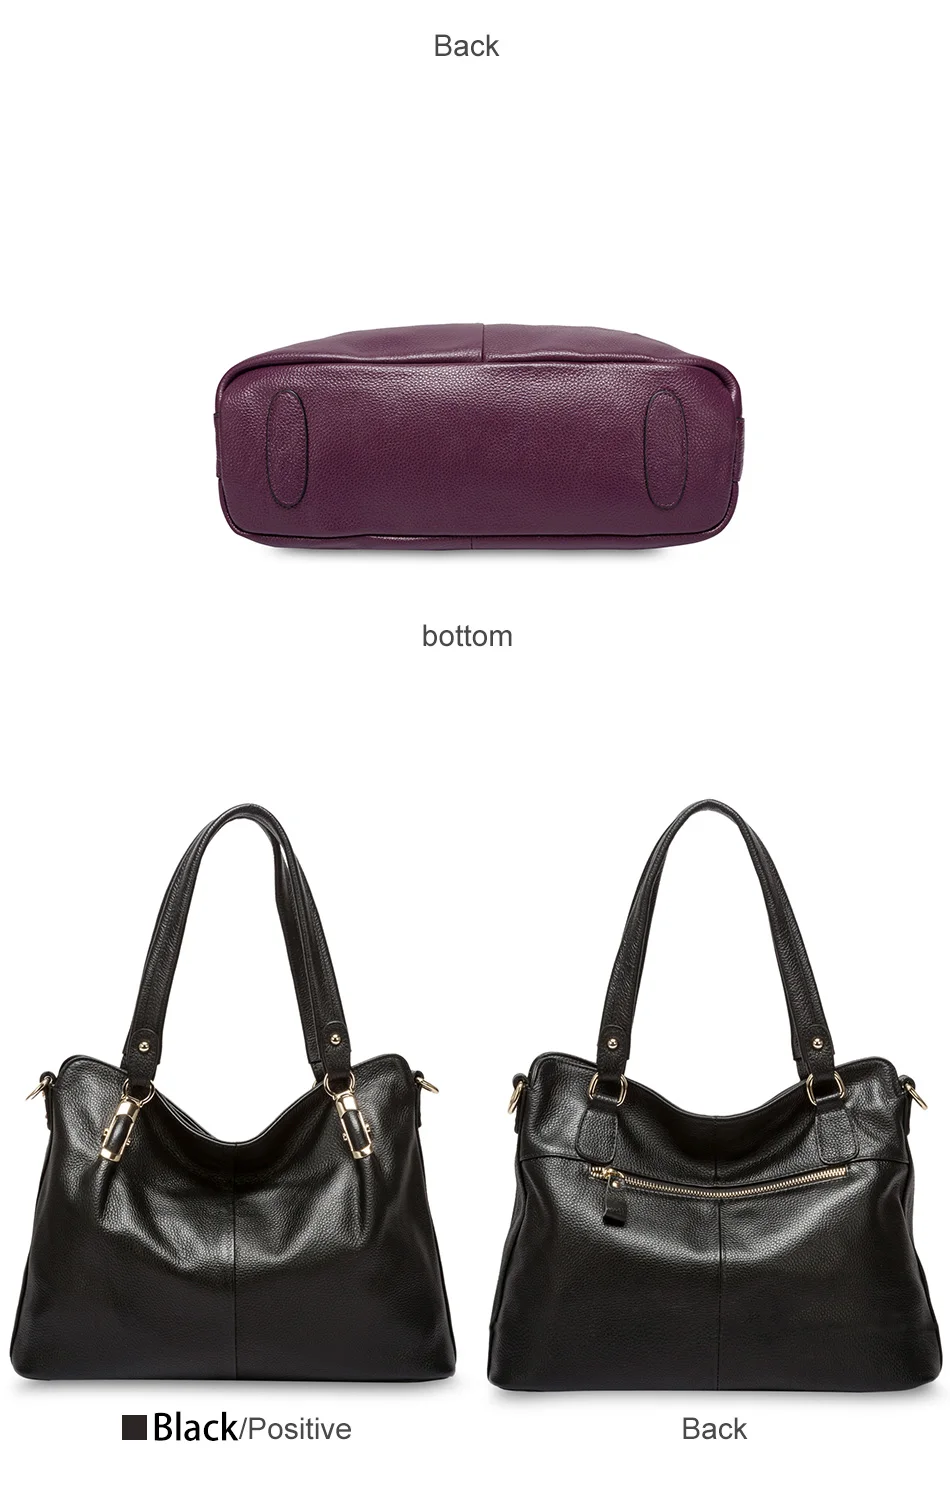 Zency сумка из натуральной кожи Роскошная фиолетовая Женская сумка через плечо модная сумка-тоут вместительная сумочка очаровательные женские сумки через плечо